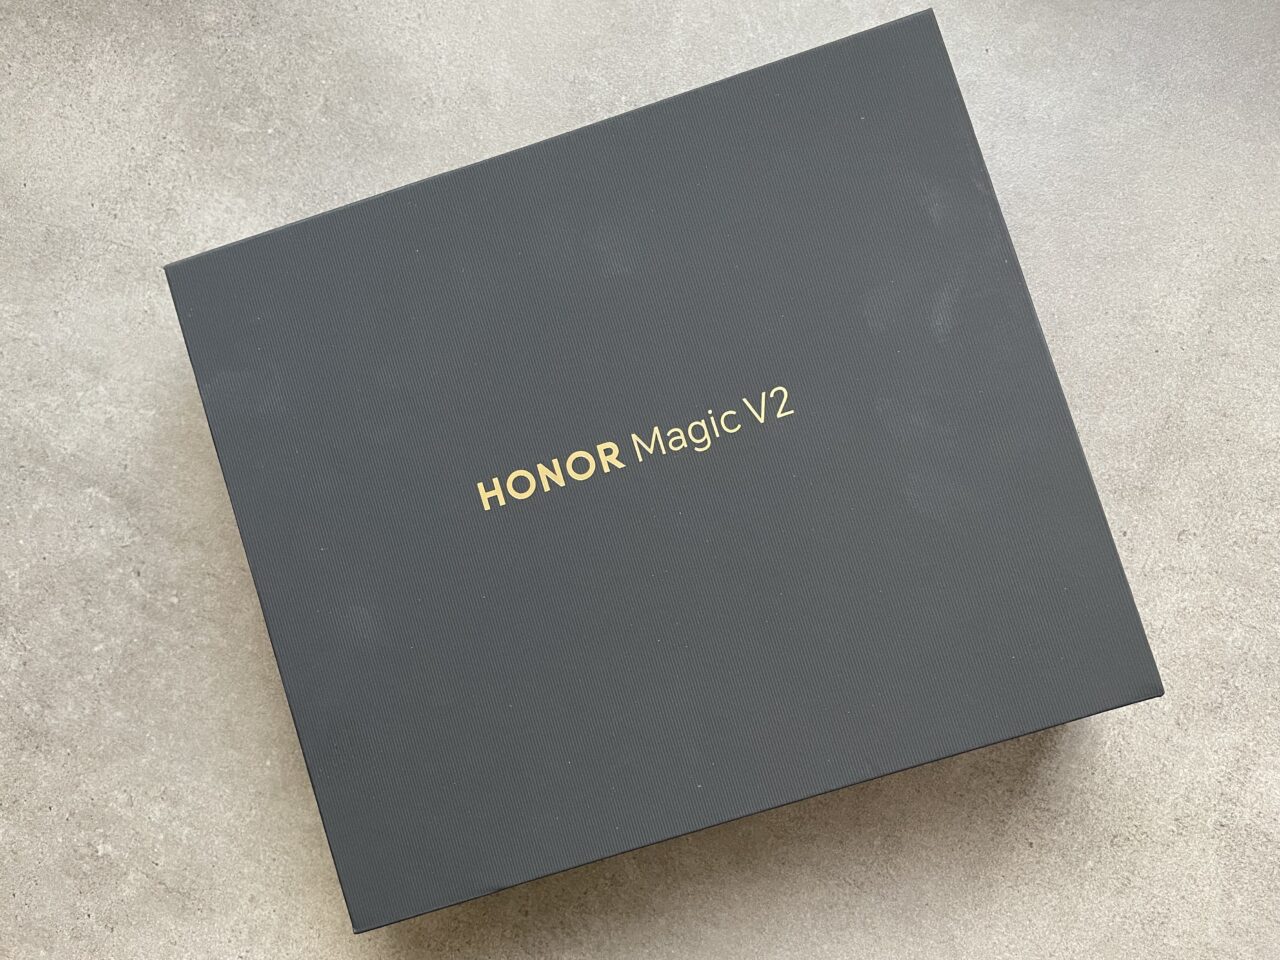 Czarne pudełko z napisem "HONOR Magic V2" umieszczone na szarej powierzchni.